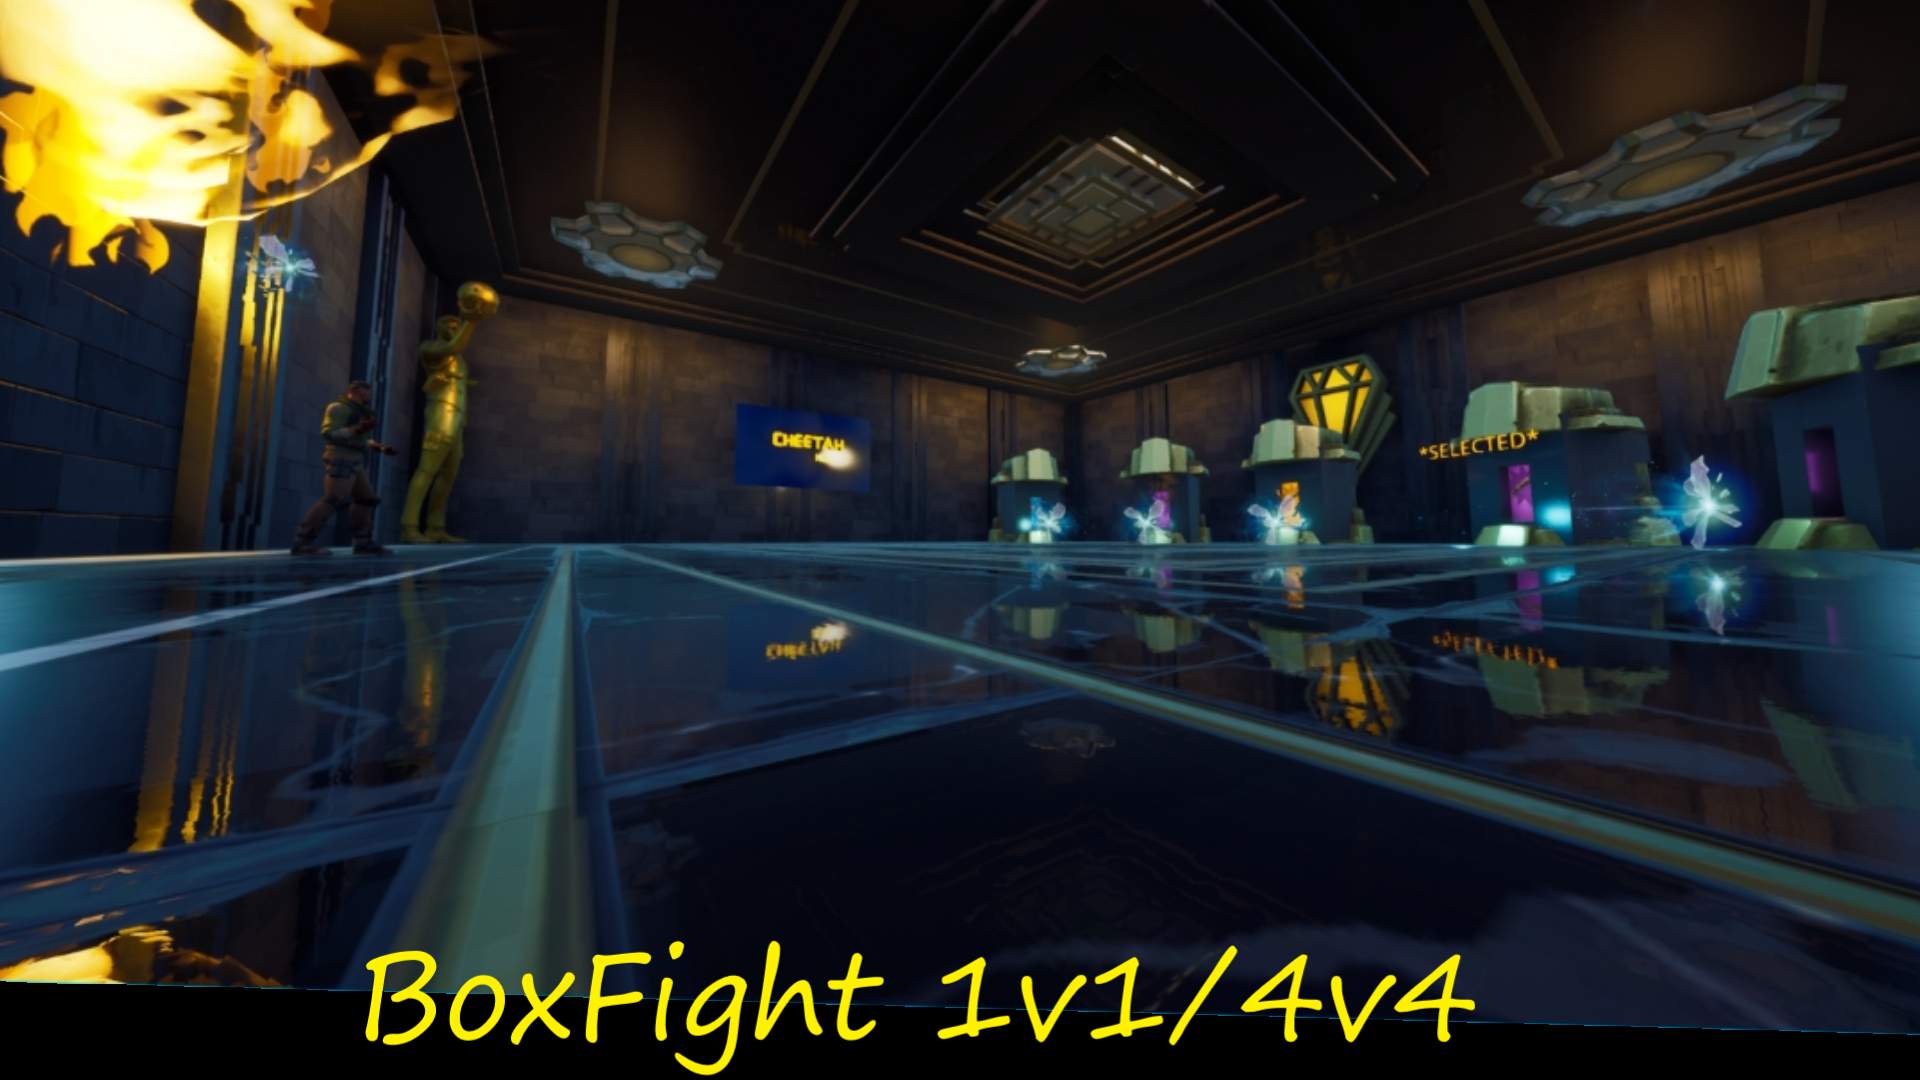 BOXFIGHT - 1V1/4V4 (CH🐆)